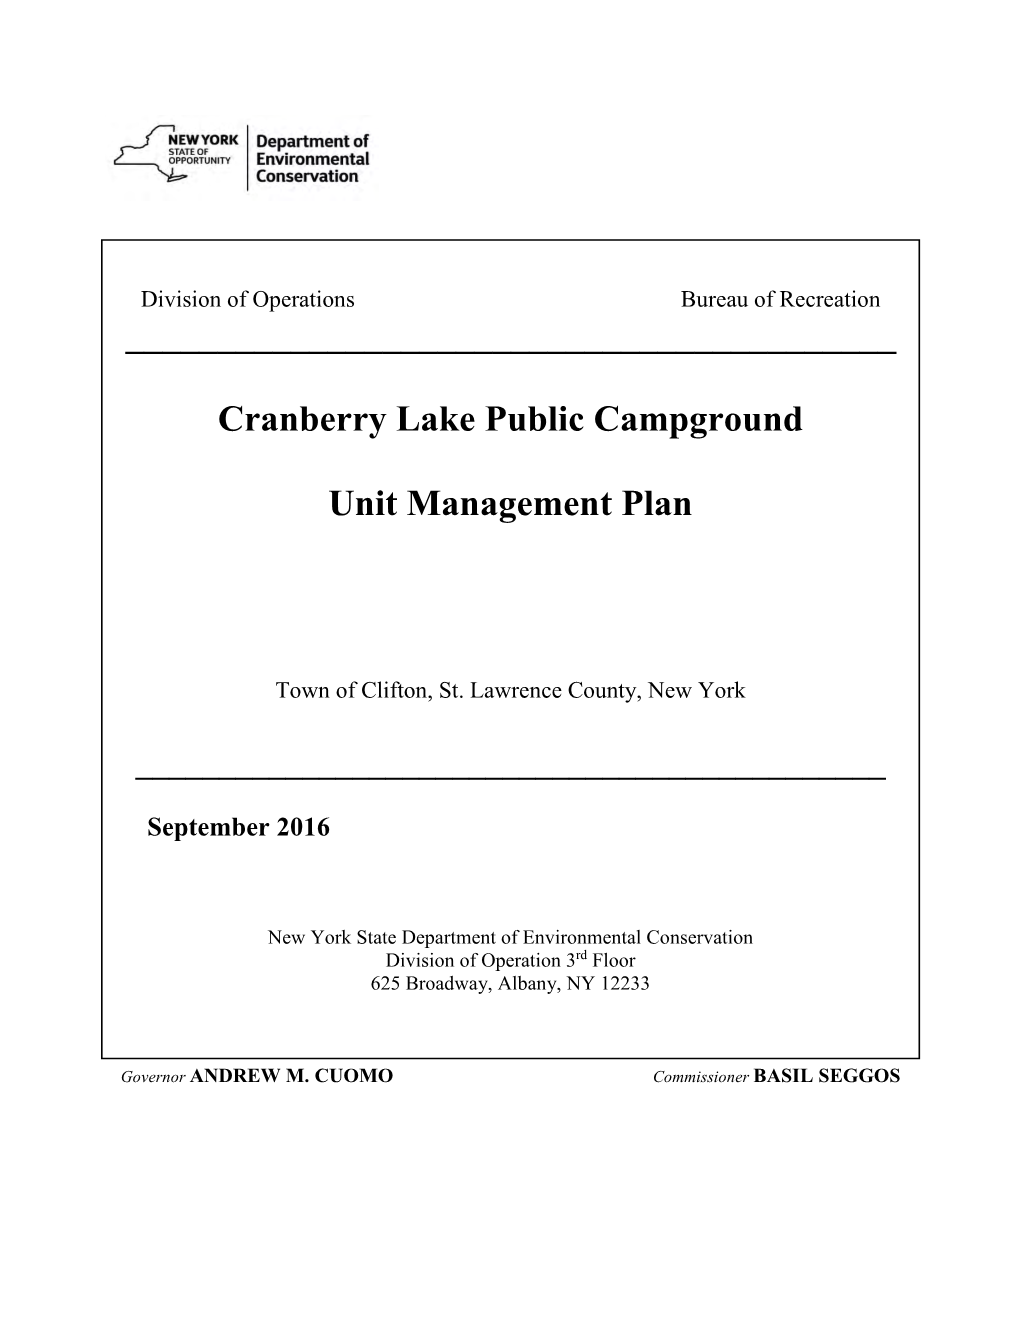 Cranberry Lake Public Campground Unit Management Plan